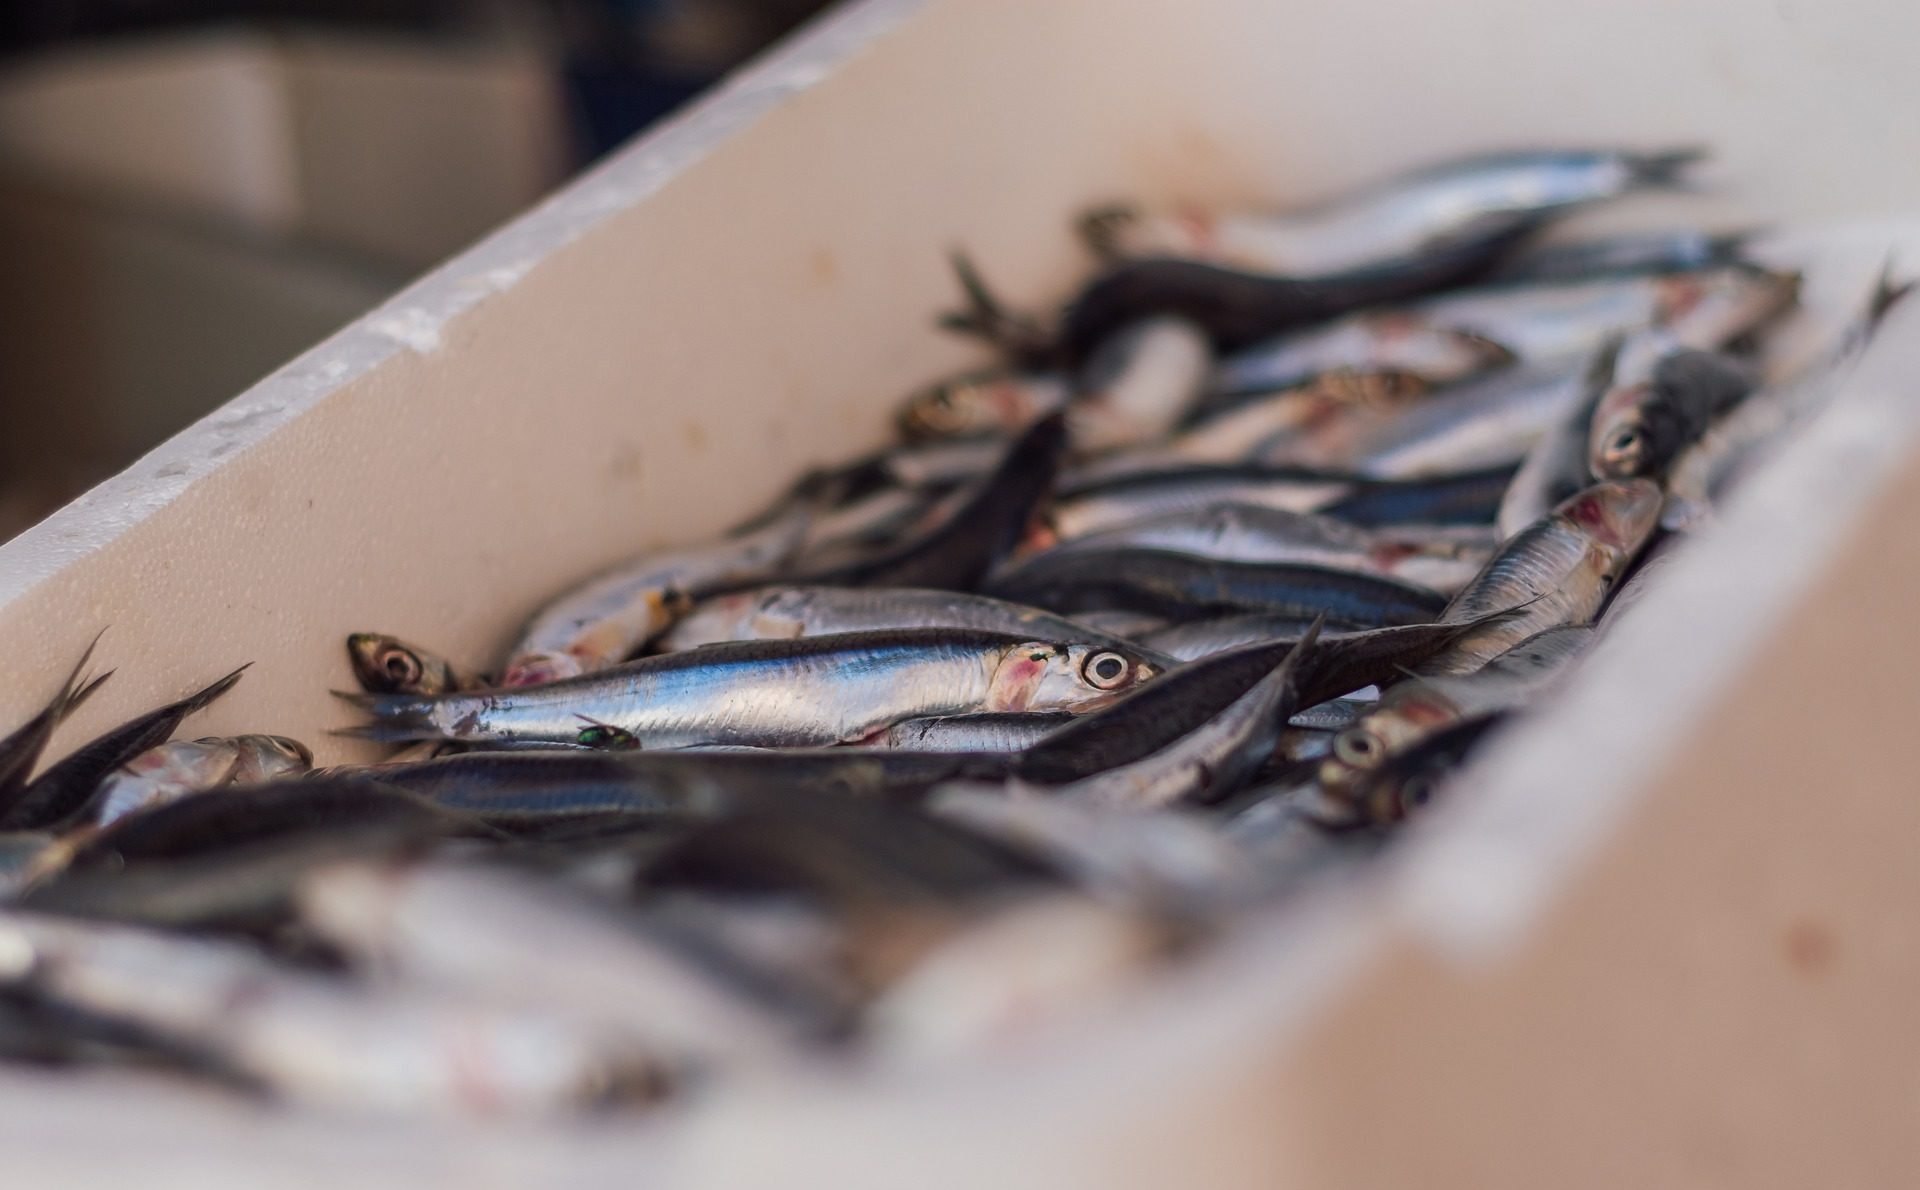 A cause du réchauffement climatique, les sardines et les anchois sont de  moins en moins gros